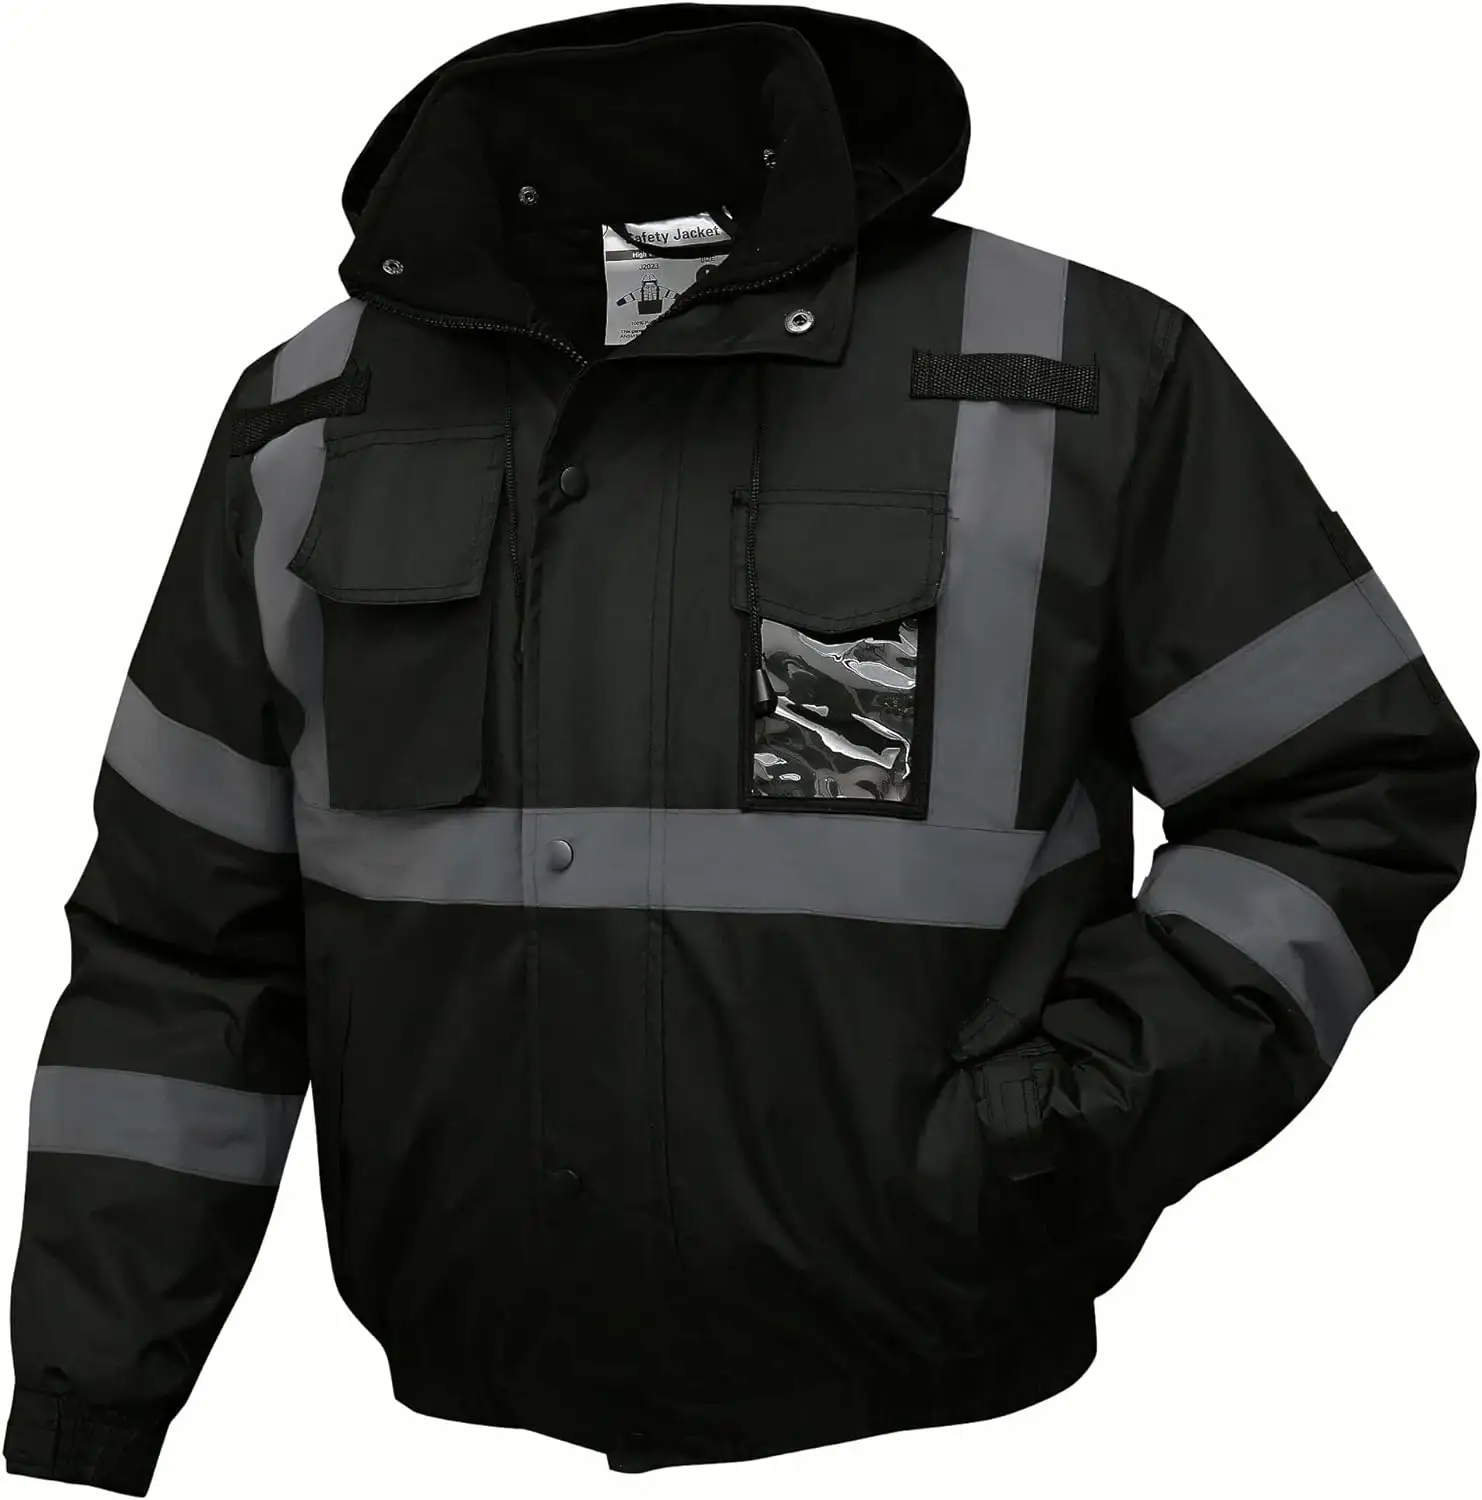 HCSP özel spor su geçirmez kış güvenlik yelek yansıtıcı güvenlik kıyafeti yüksek görünürlük erkek yansıtıcı koşu ceket